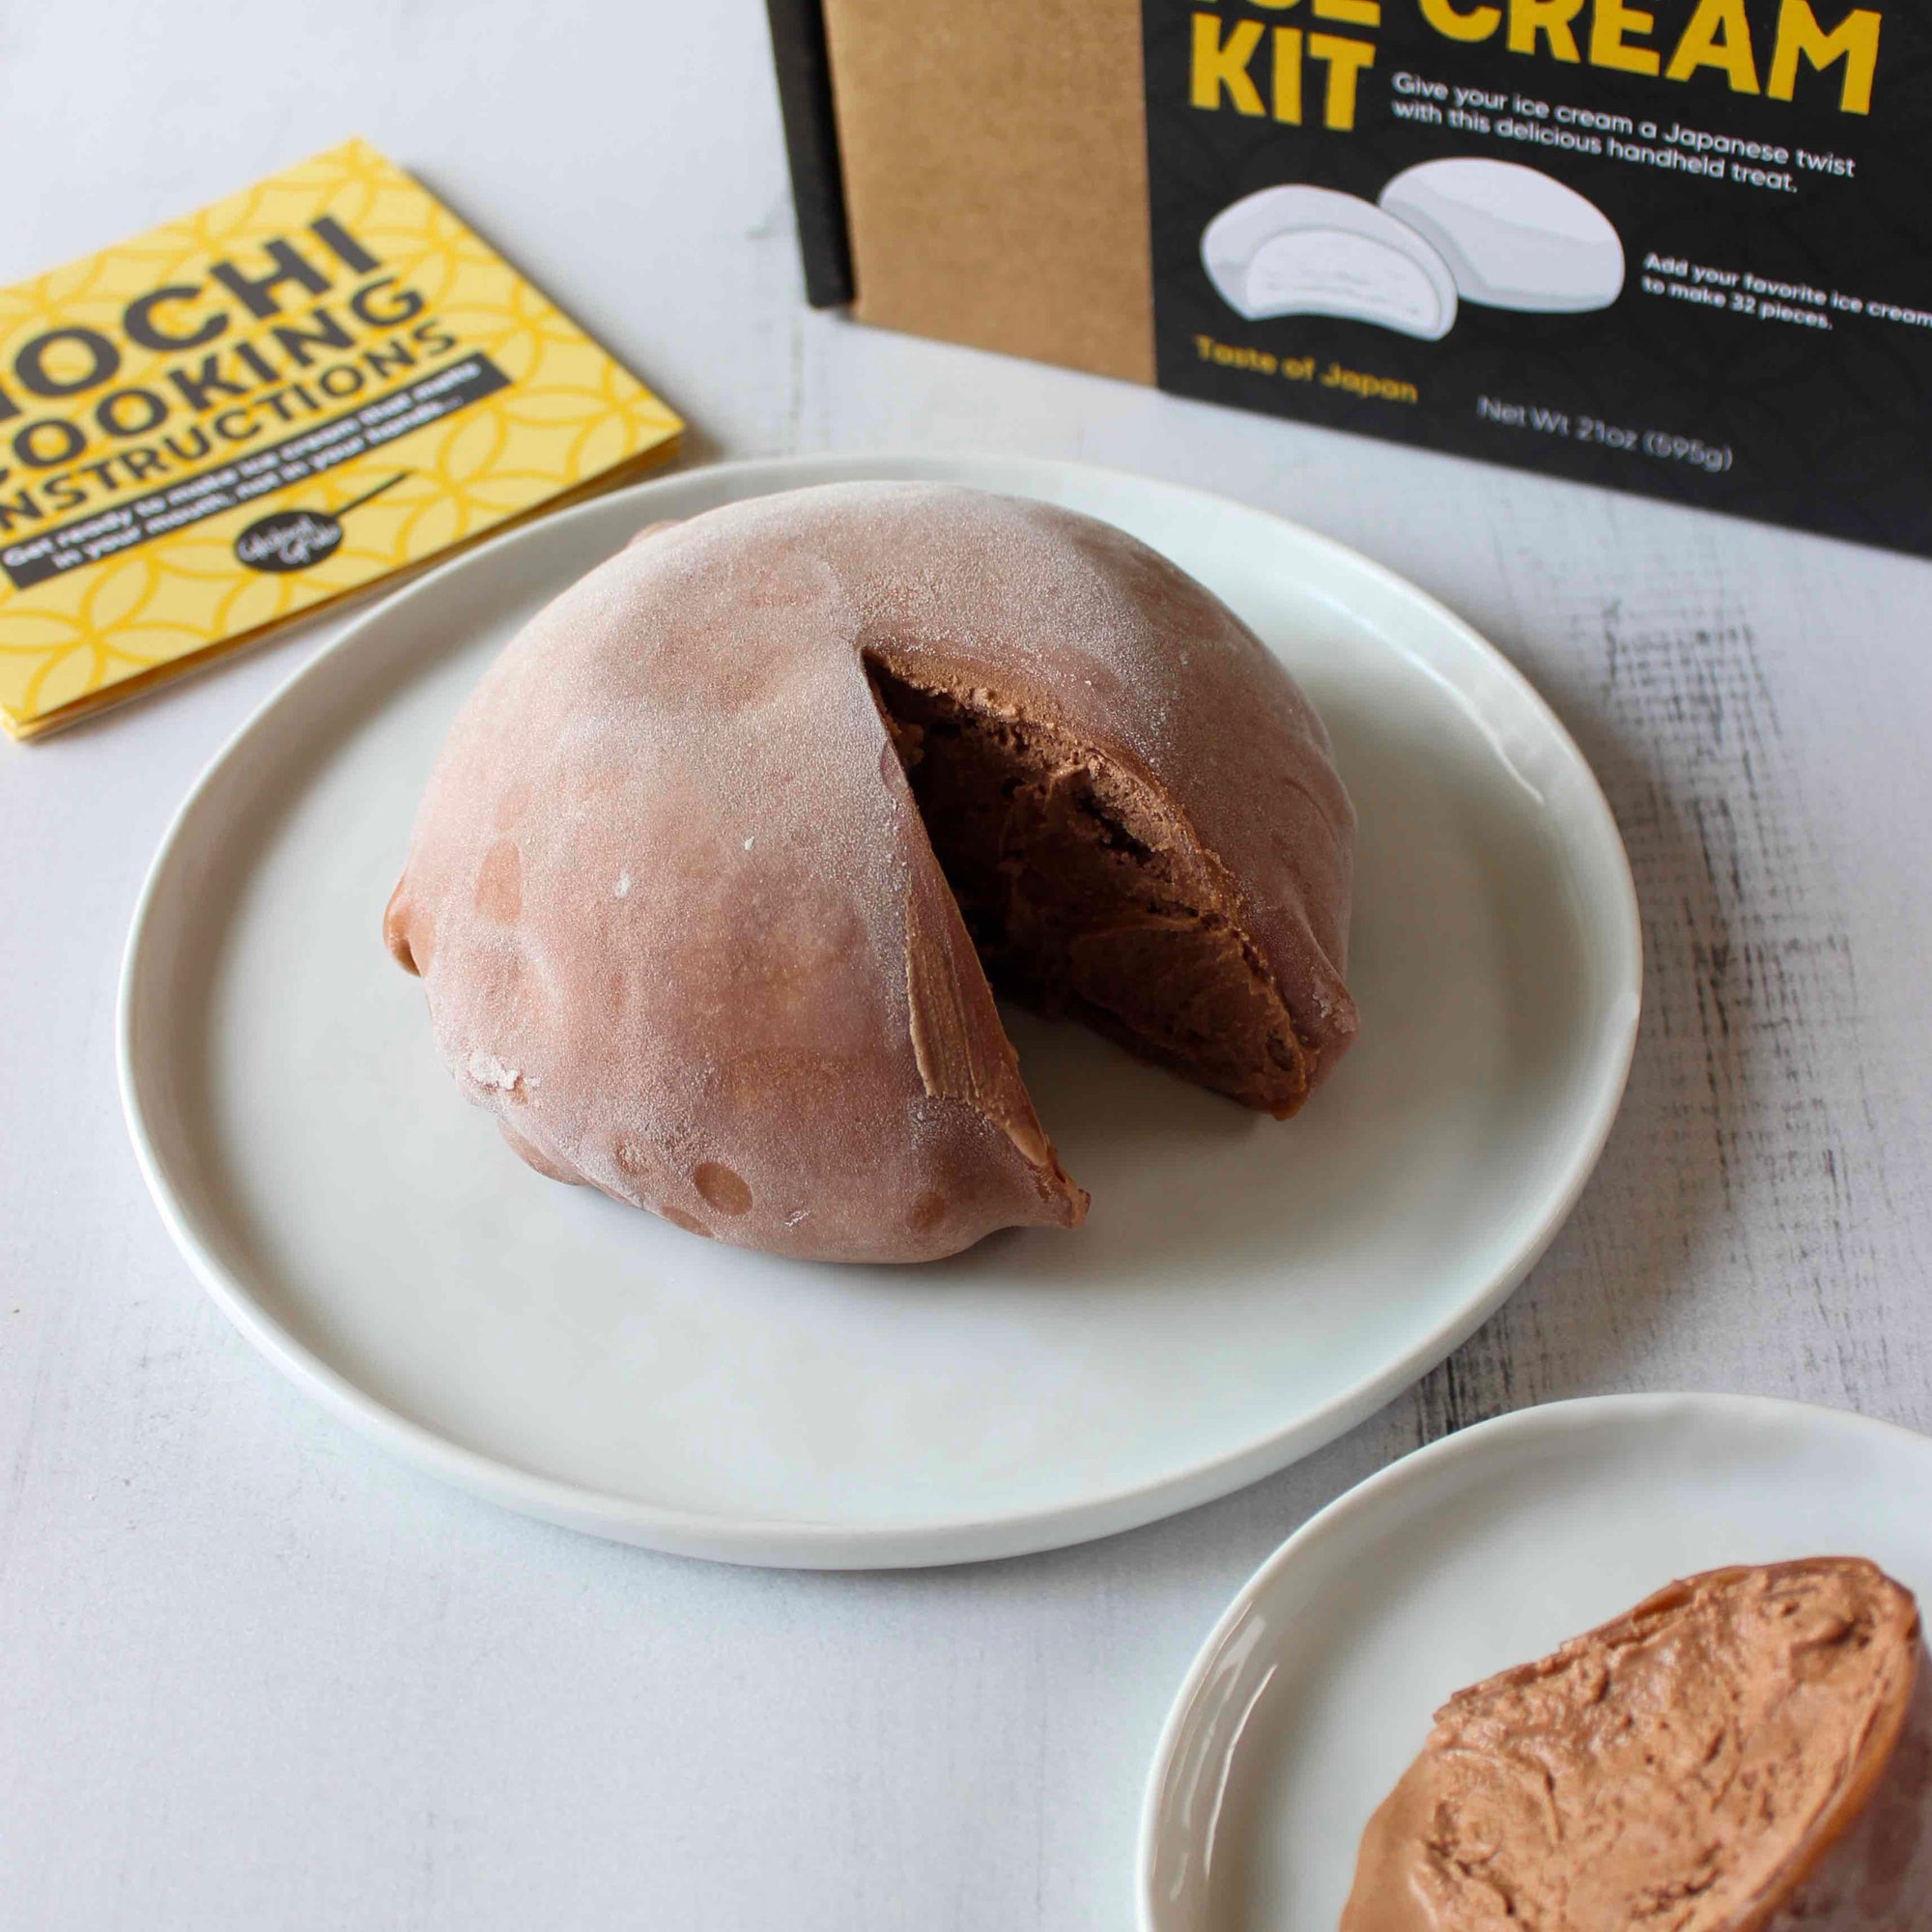 DIY Mochi Ice Cream Kit, Mochi Making Kit